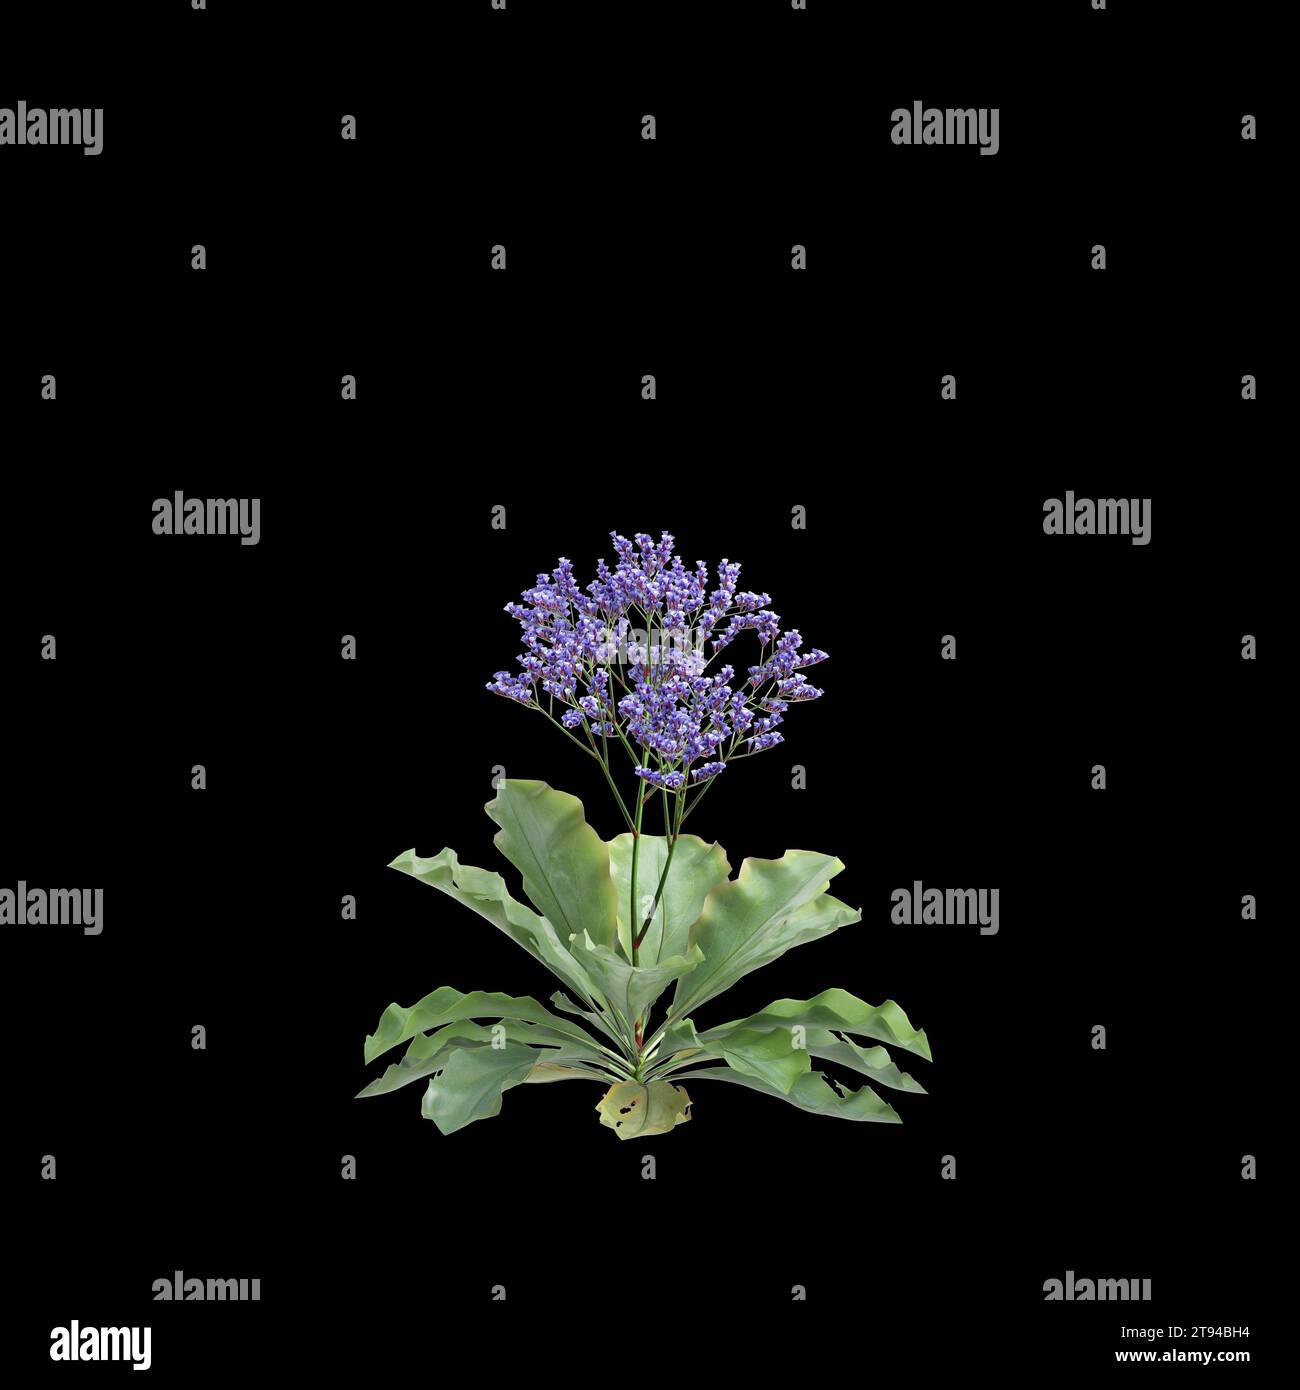 3d illustration of Limonium perezii bush isolated black background Stock Photo